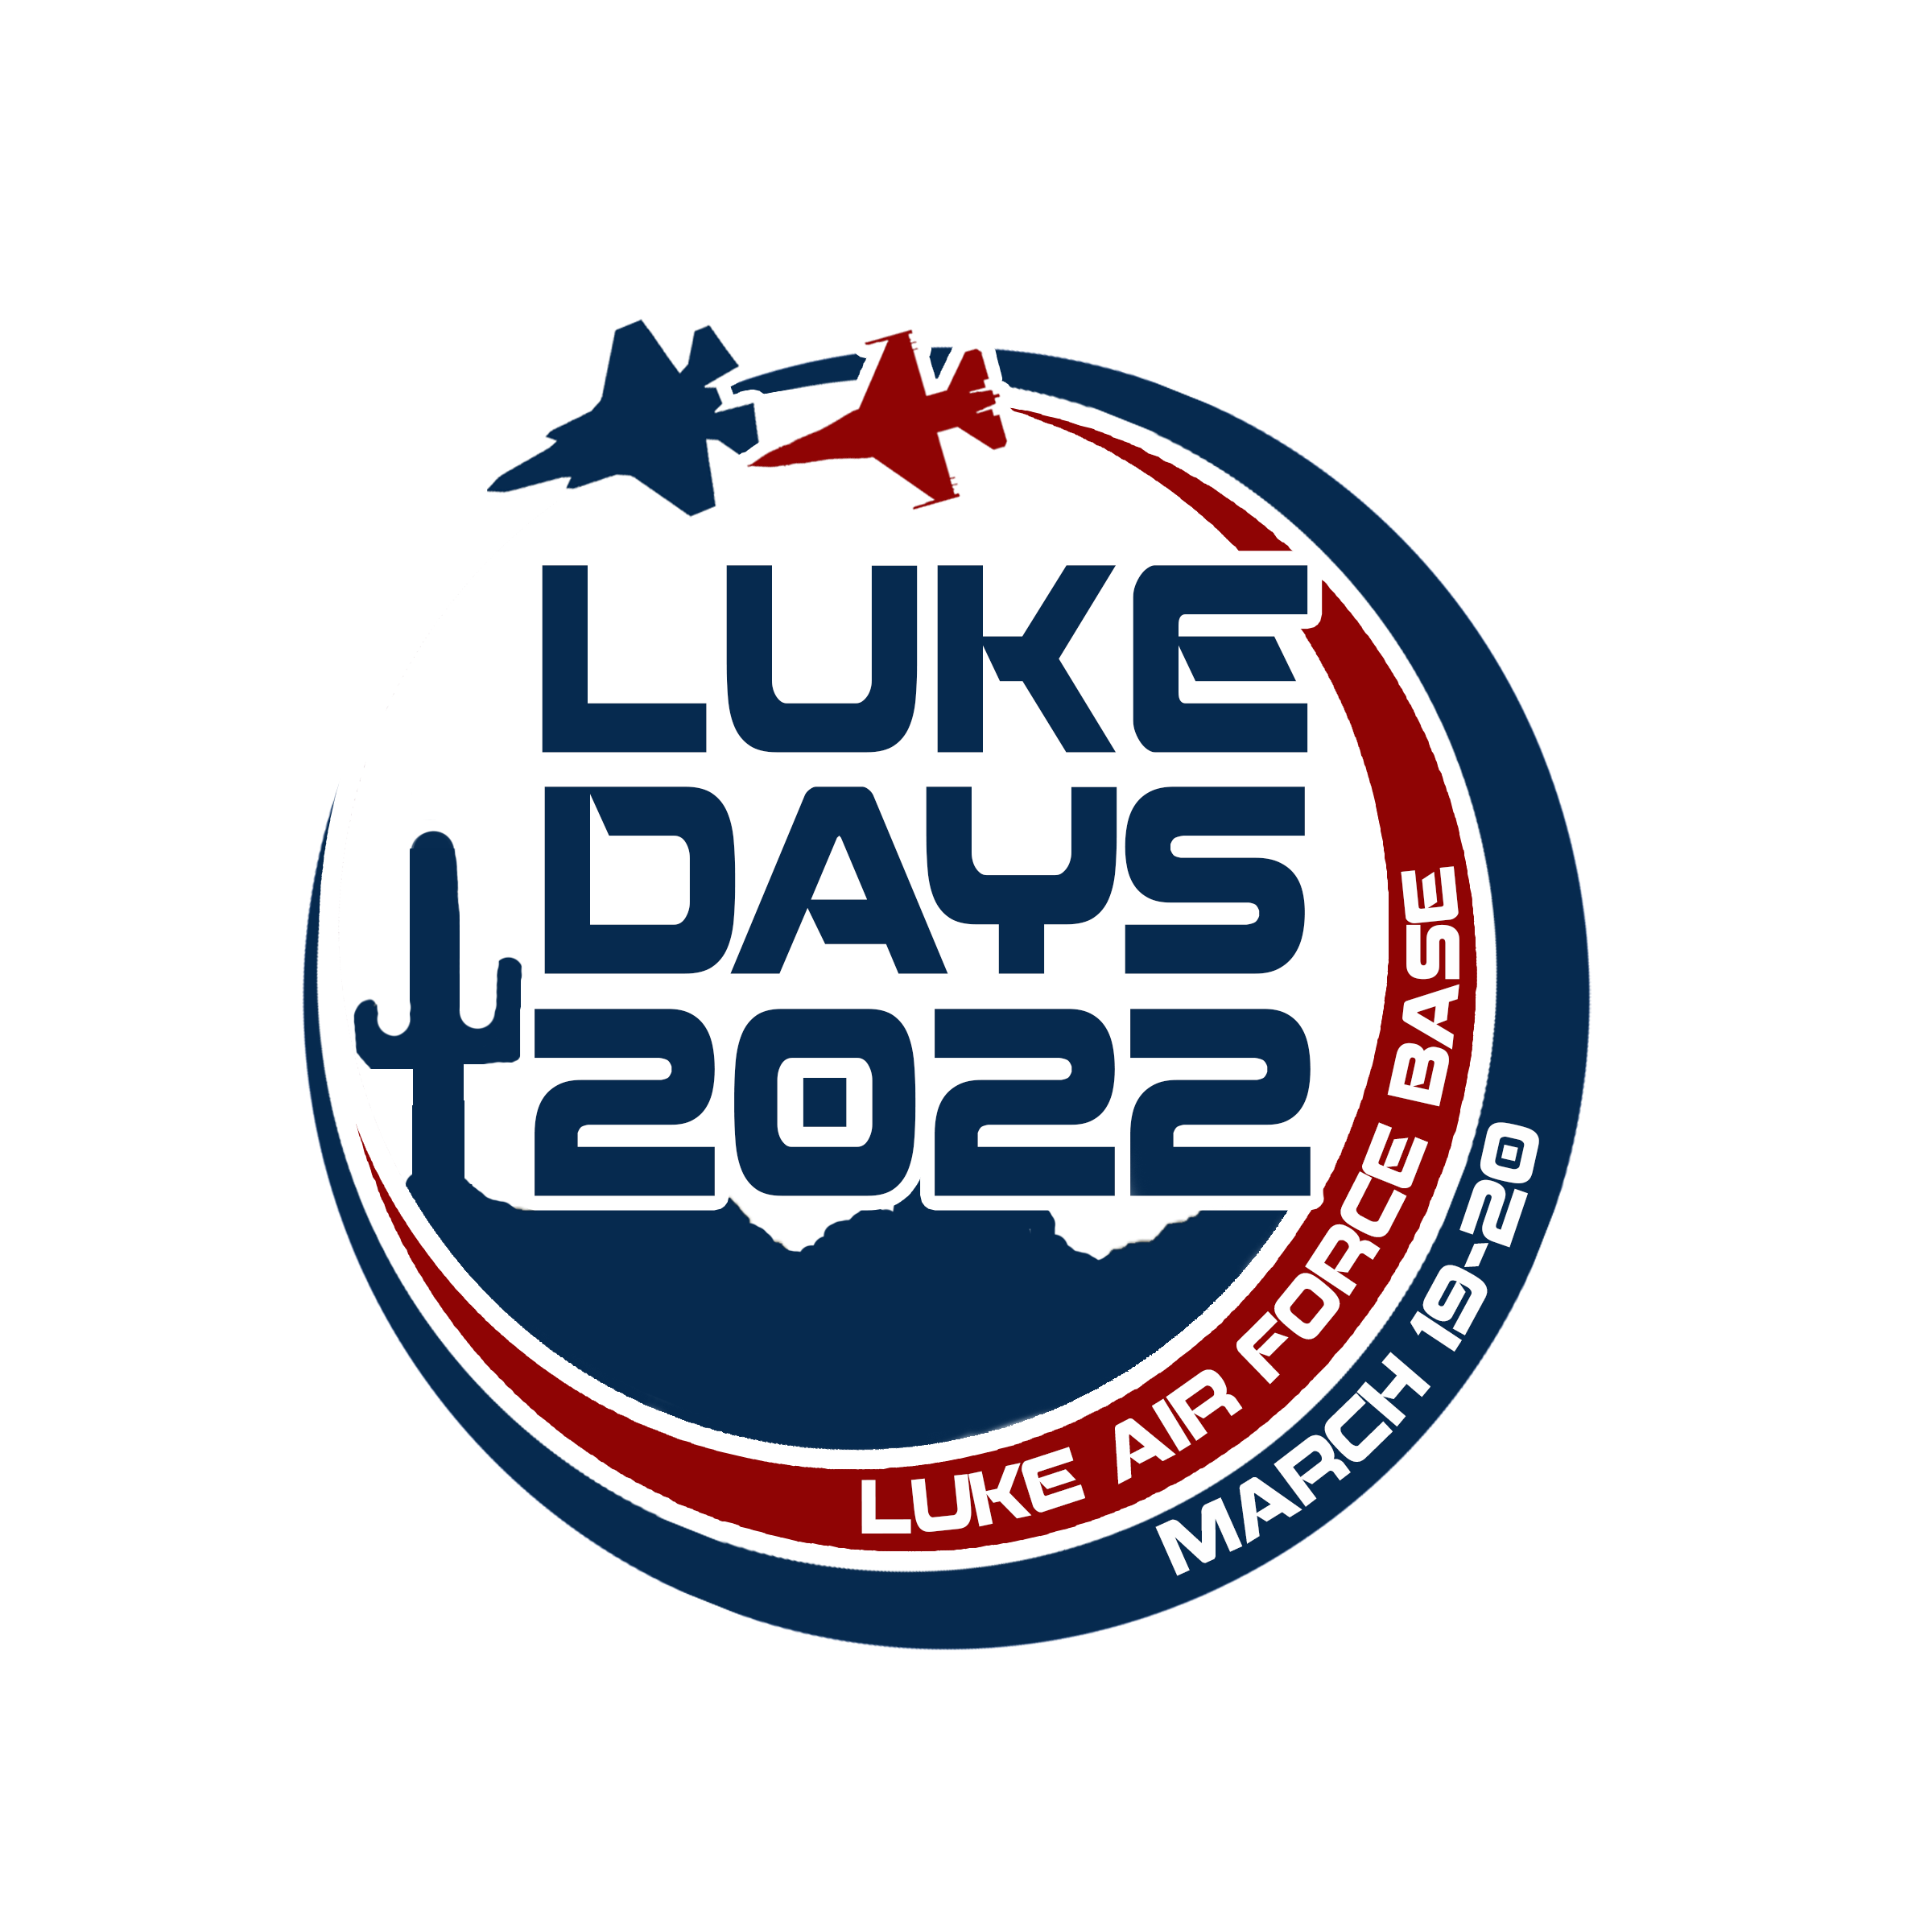 Luke Days 2022 Schedule Luke Days 2022